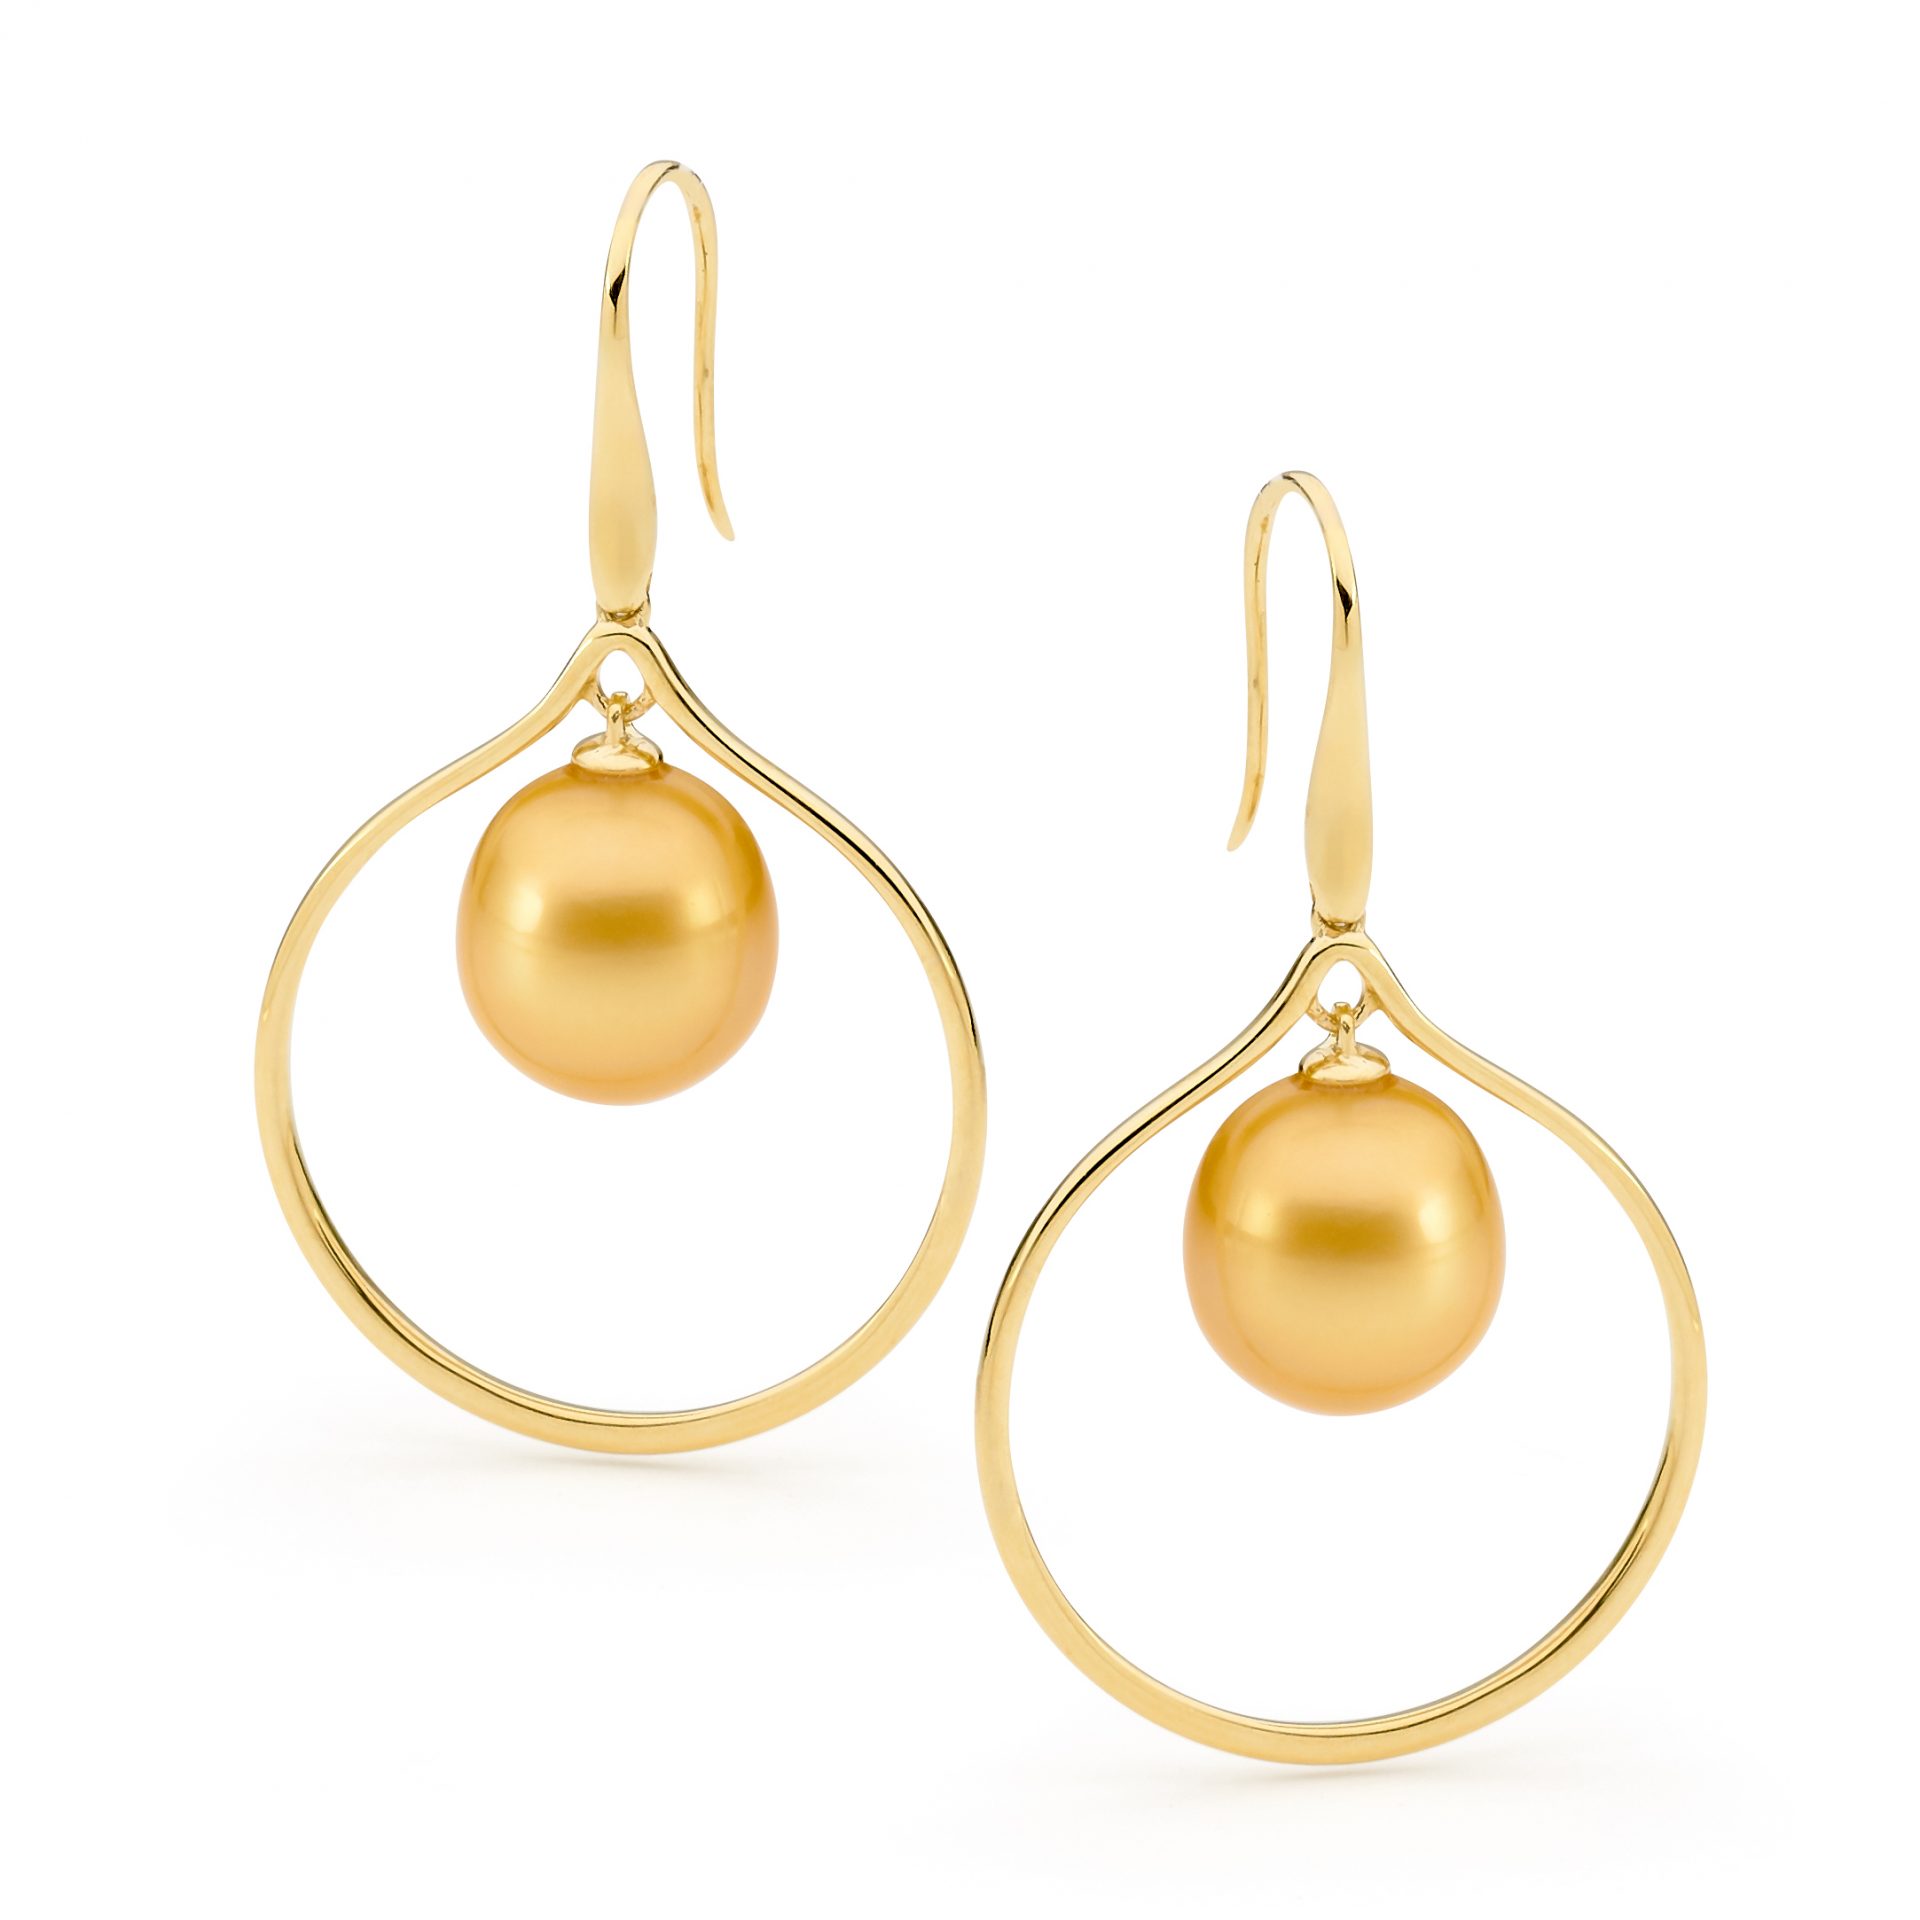 Pearl Hoop Earrings - Australian Made | Aquarian Pearls